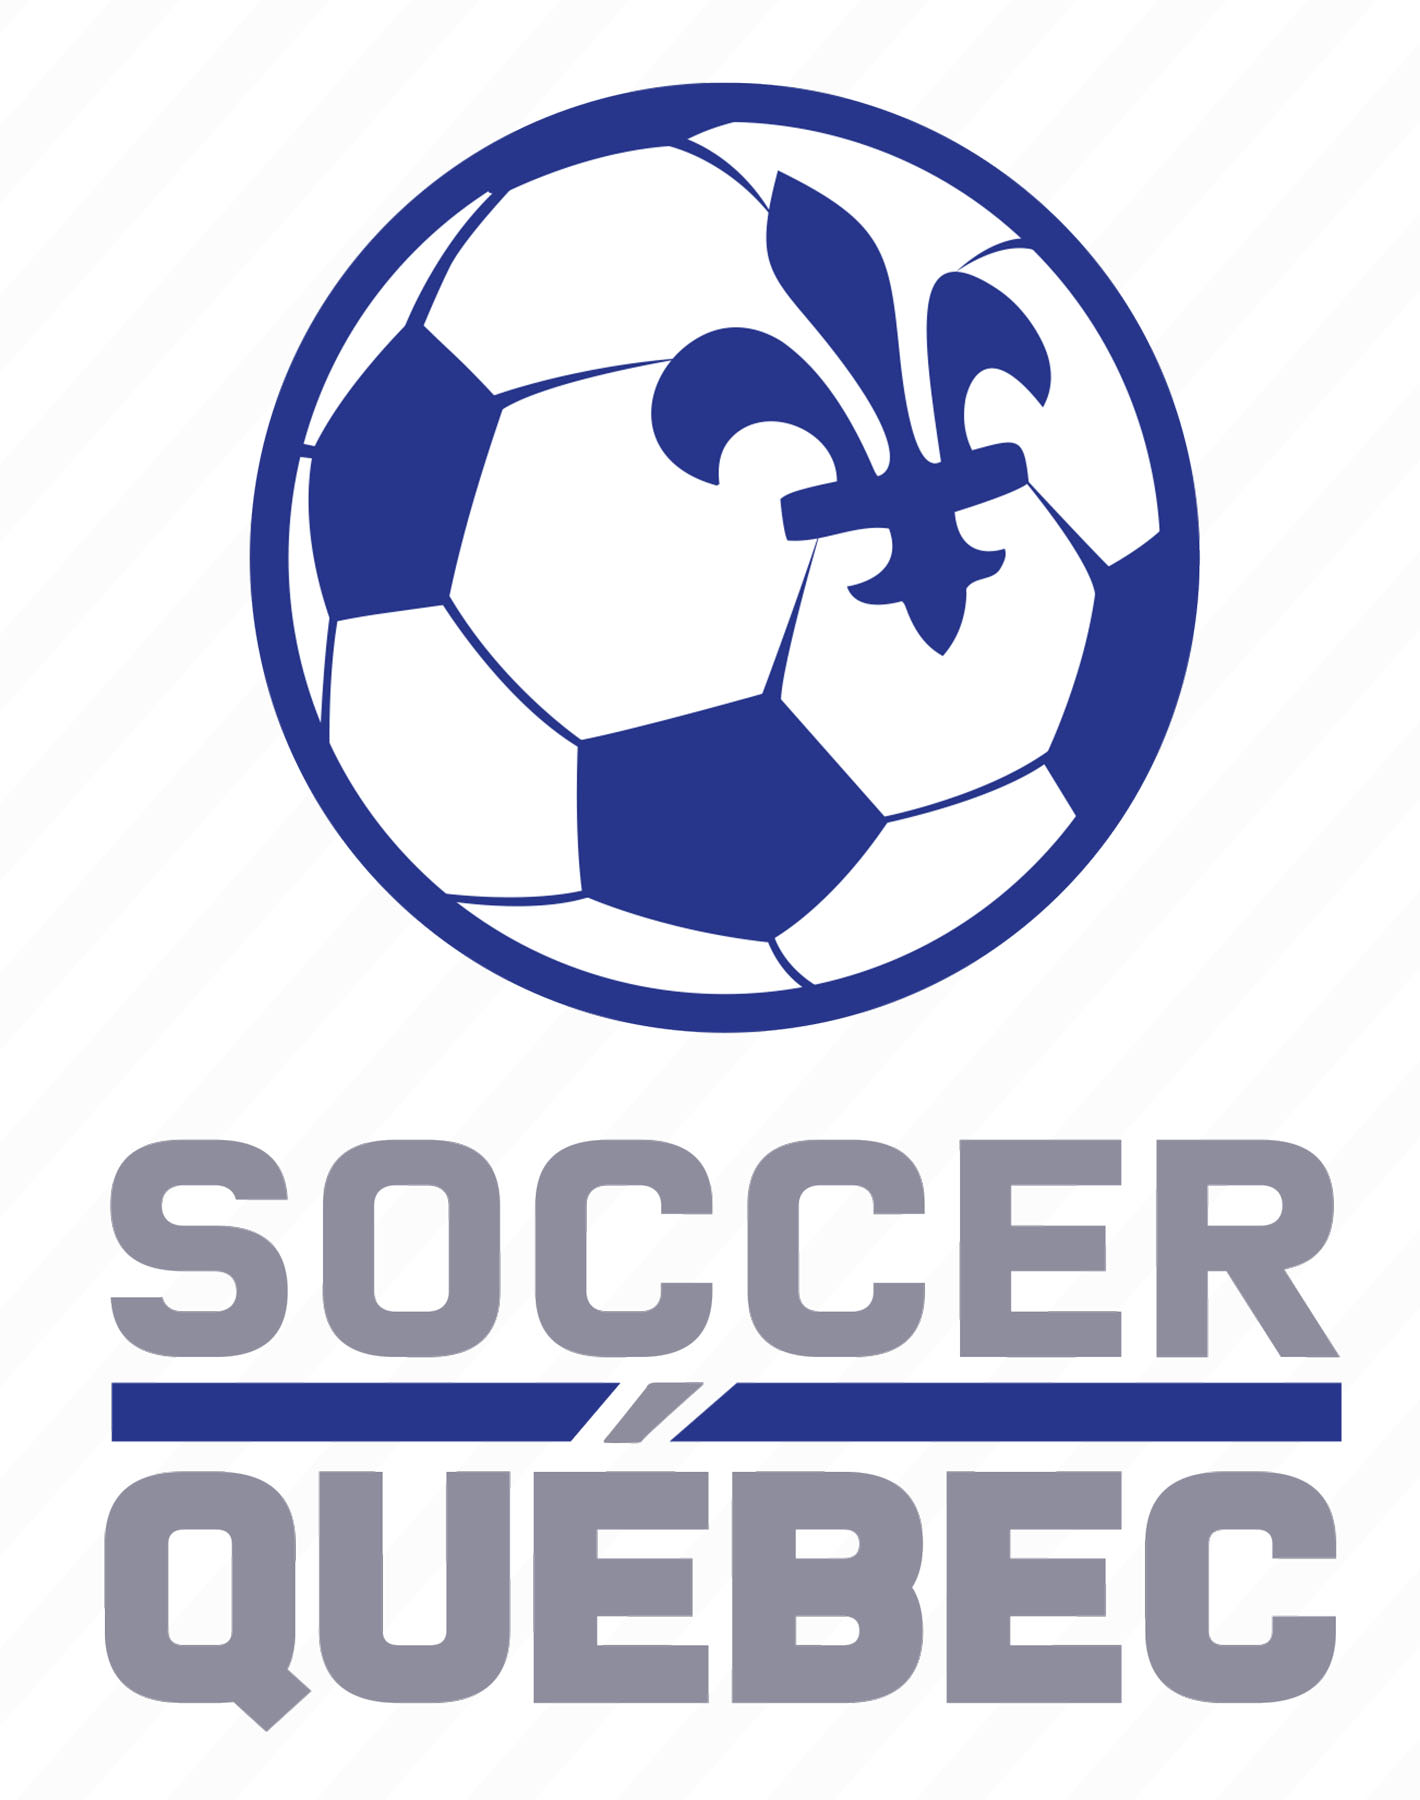 Québec Soccer Hall of Fame